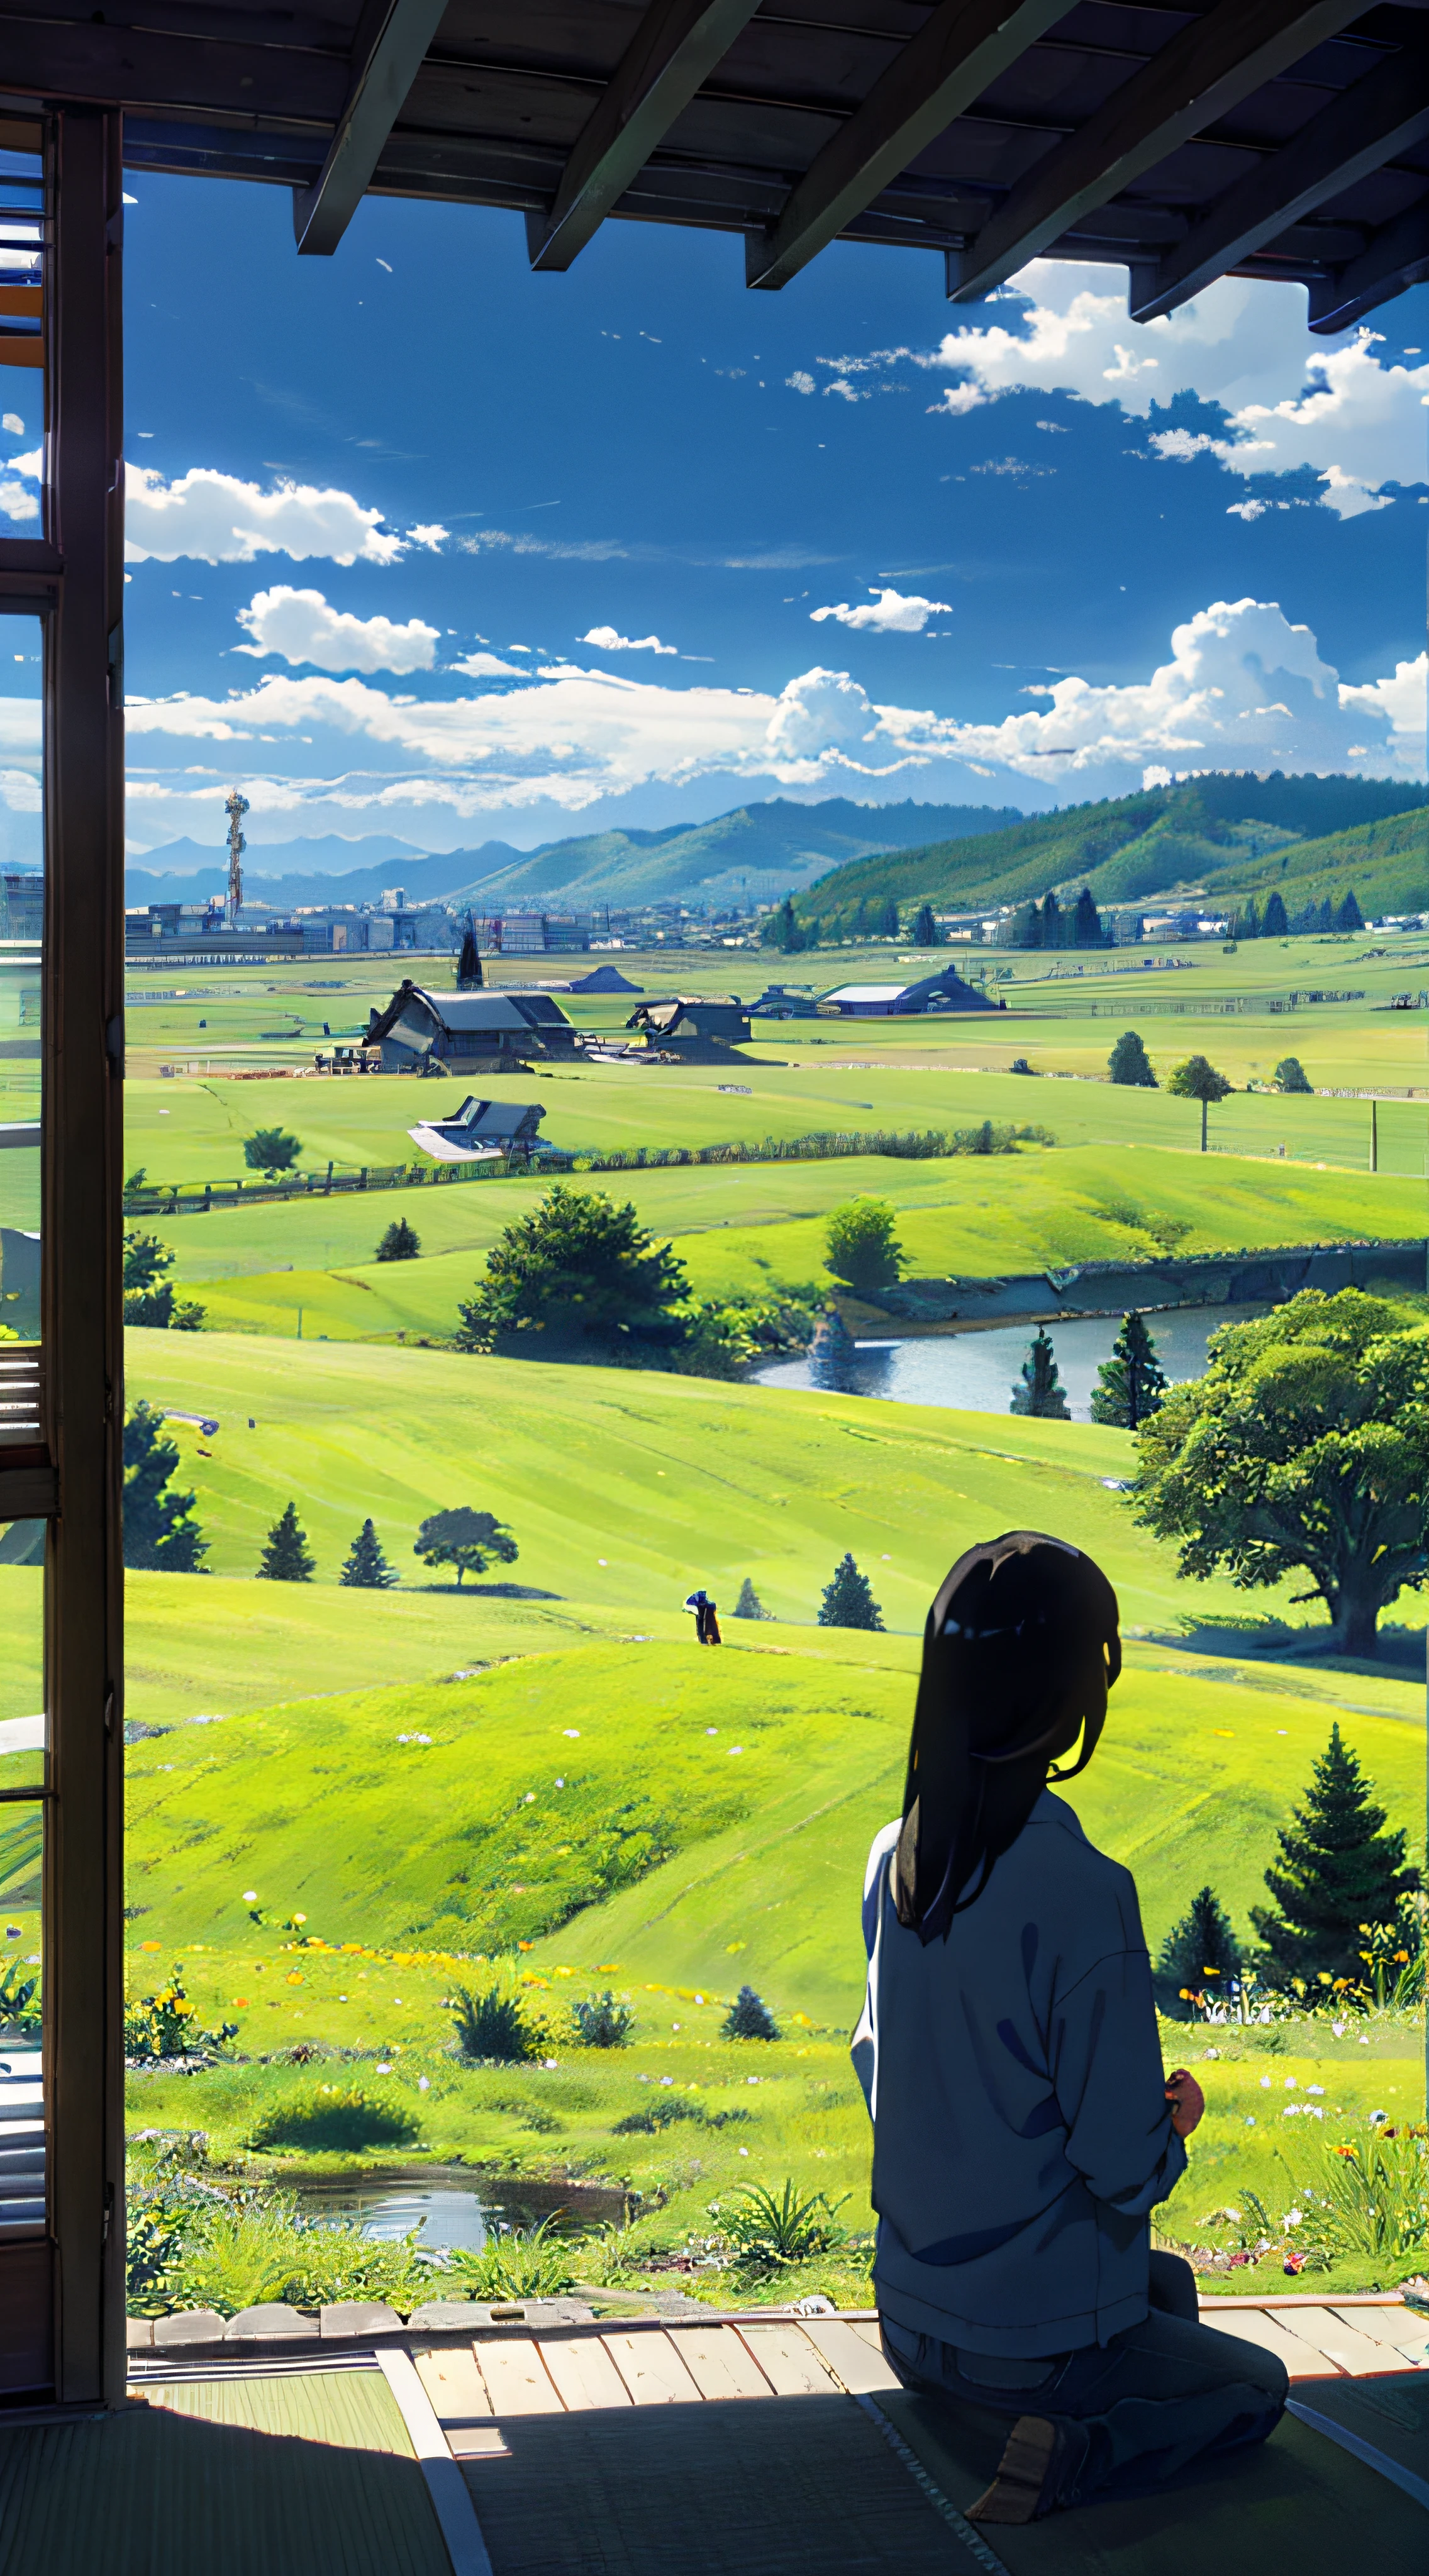 廣闊而雄偉的天際線、大天空佔據了照片的三分之二、穿著休閒服的女孩和男孩並排坐在草地上、遠處有一座荒廢的日本城市